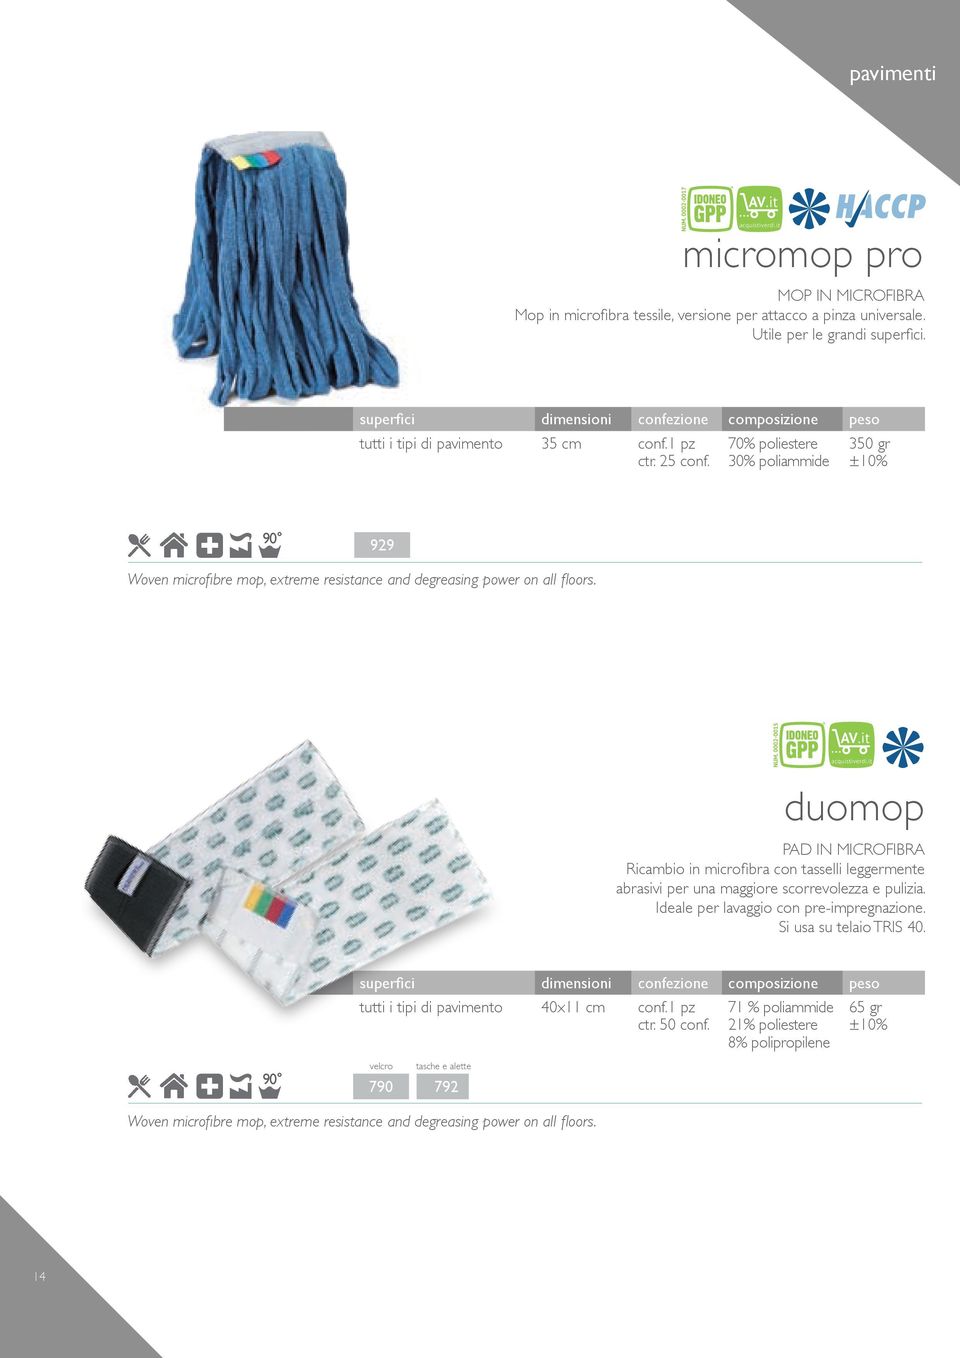 duomop PAD IN MICROFIBRA Ricambio in microfibra con tasselli leggermente abrasivi per una maggiore scorrevolezza e pulizia. Ideale per lavaggio con pre-impregnazione.